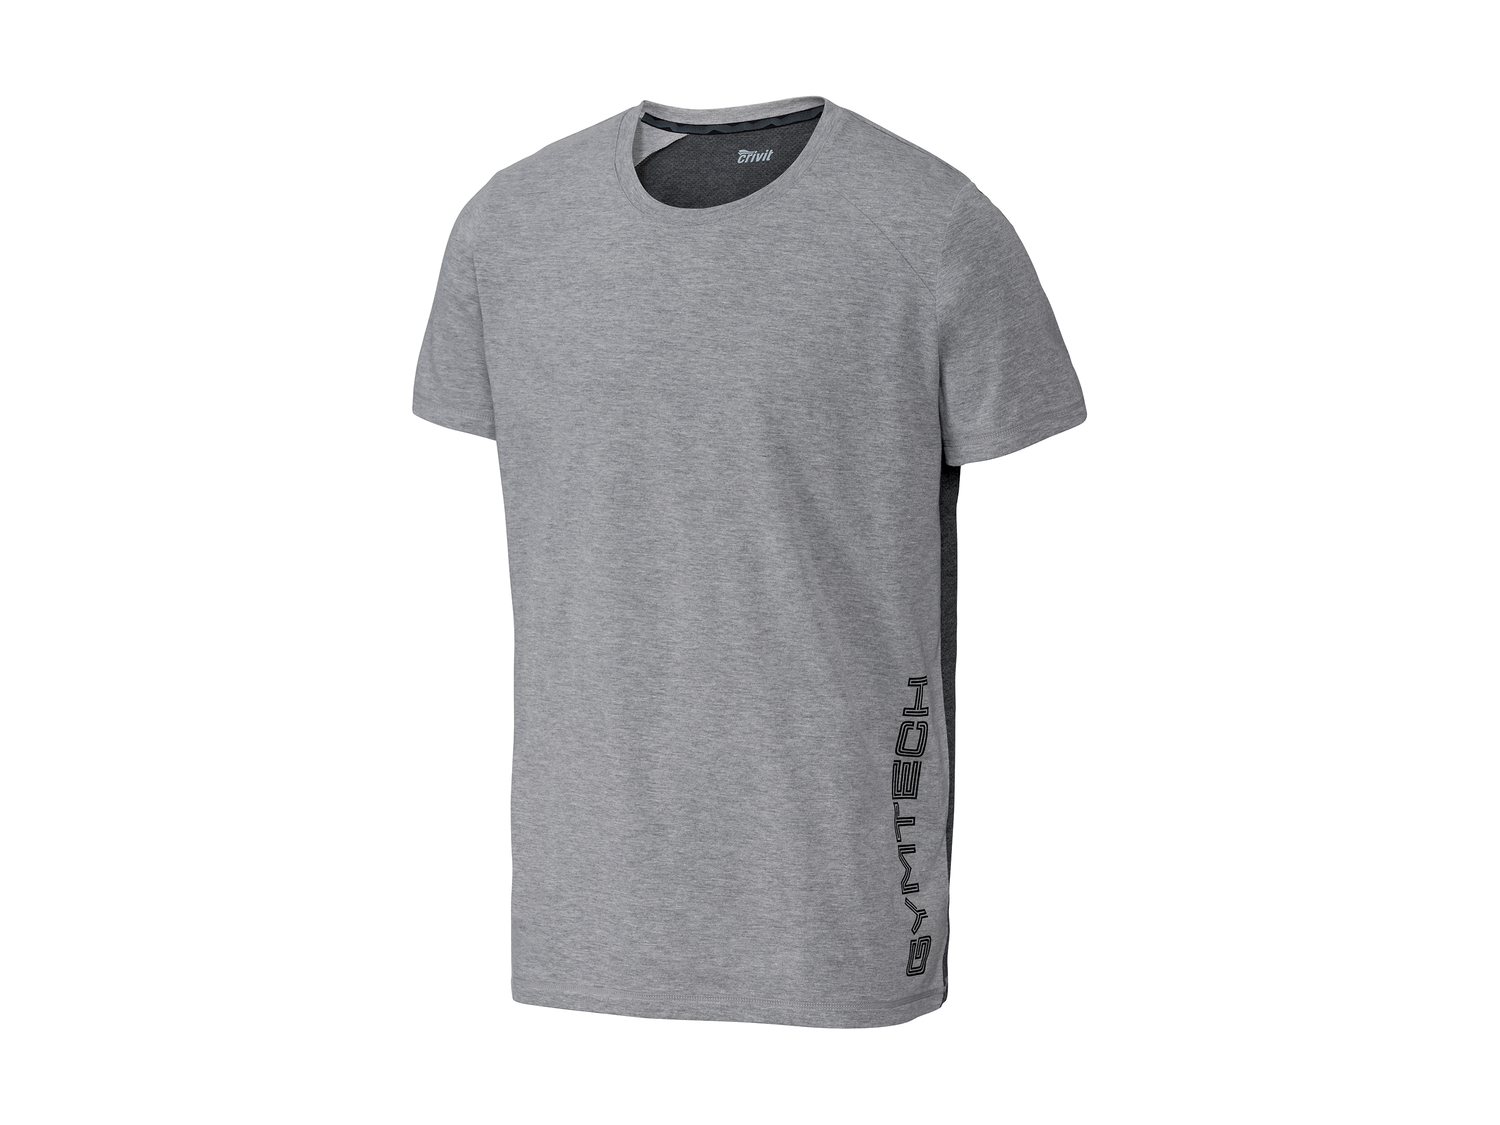 T-shirt technique homme , le prix 4.99 € 
- Du S au XL selon modèle.
- Ex. ...